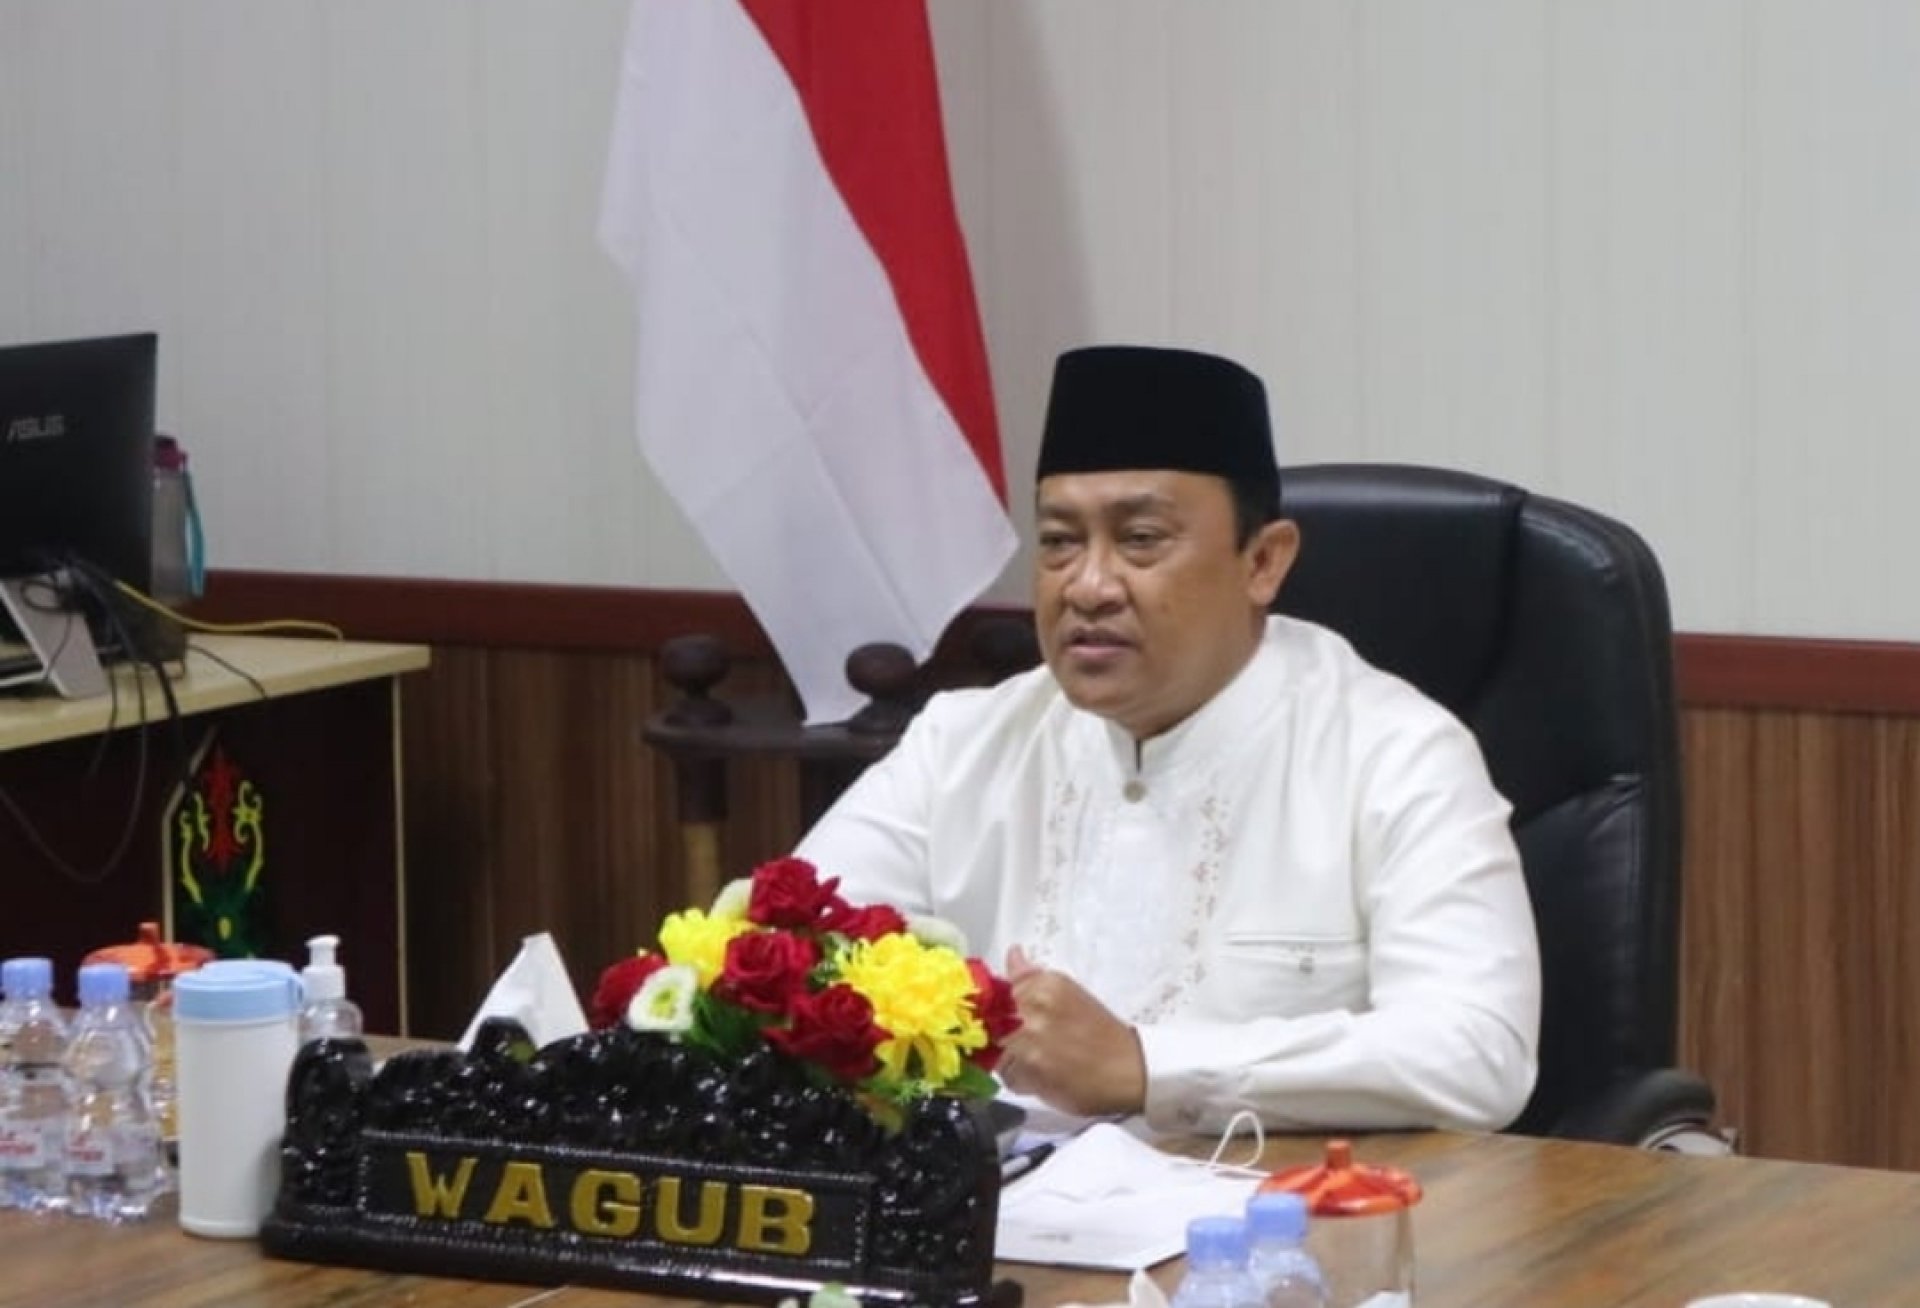 Wagub Buka Kegiatan Pembinaan Peserta Kafilah Kalteng untuk STQ Nasional XXVI Maluku Utara